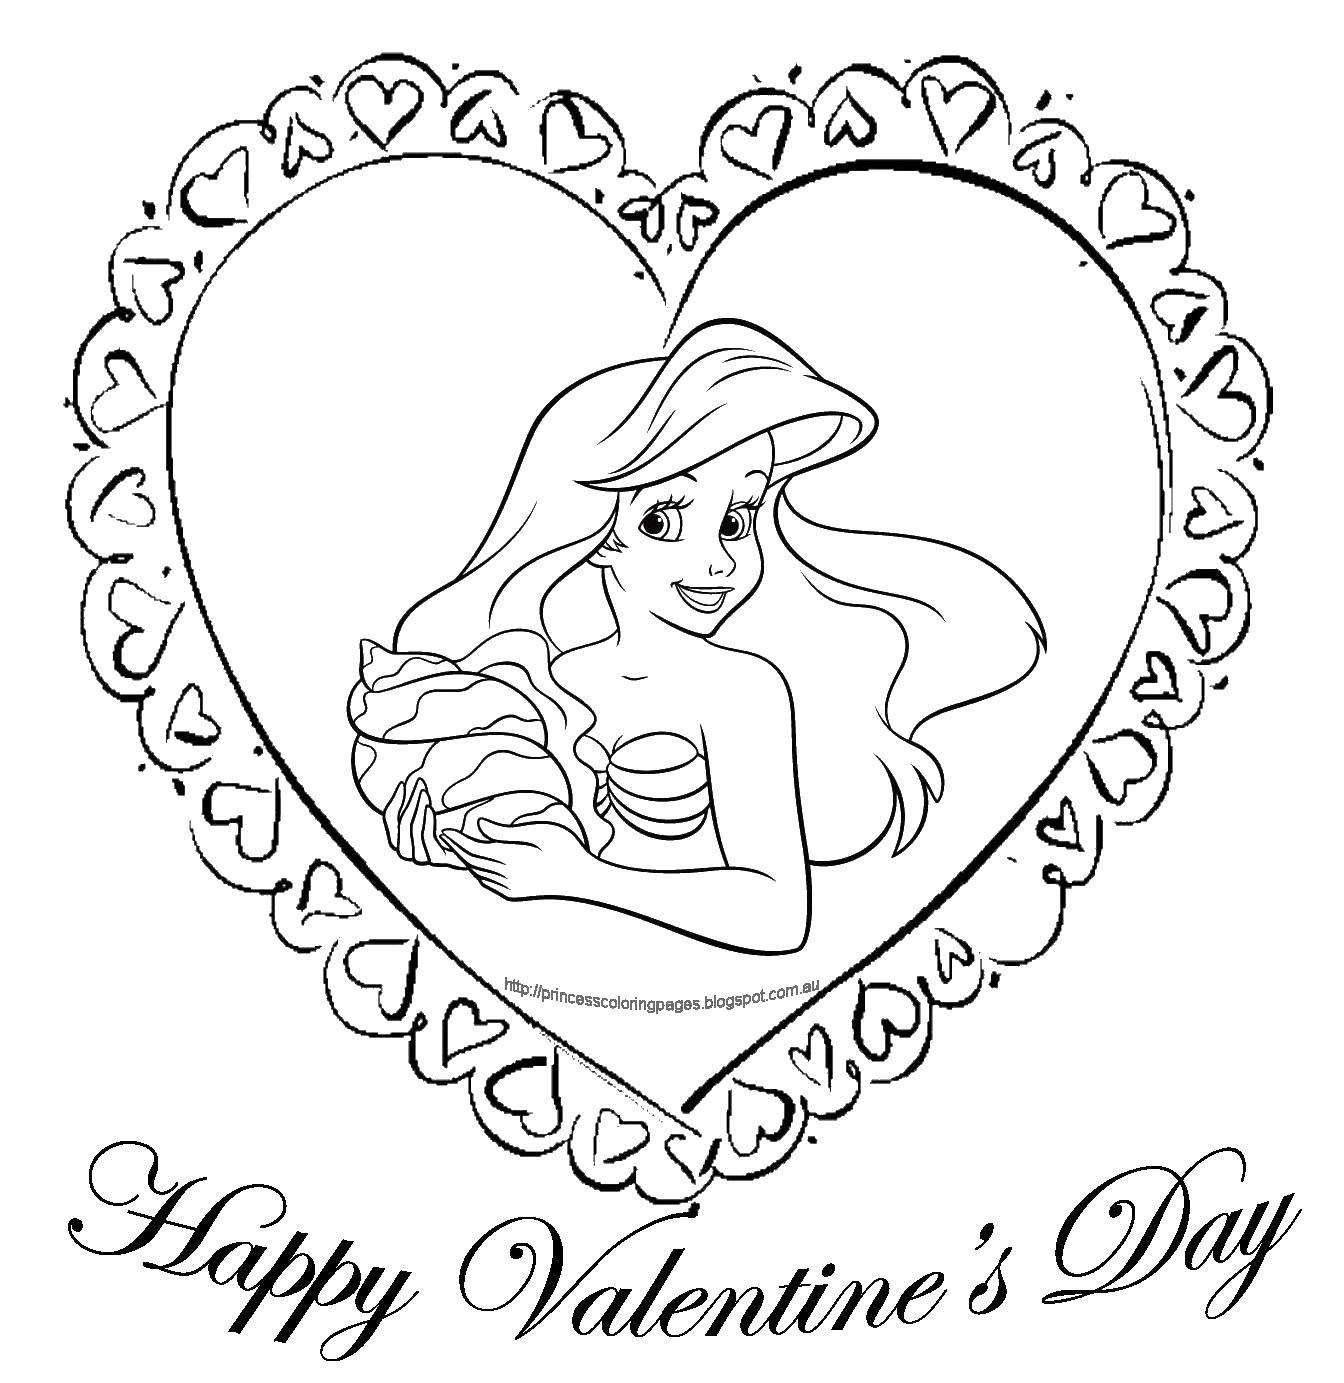 Название: Раскраска Счастливого дня влюблённых. Категория: День святого валентина. Теги: День Святого Валентина, любовь, сердце.